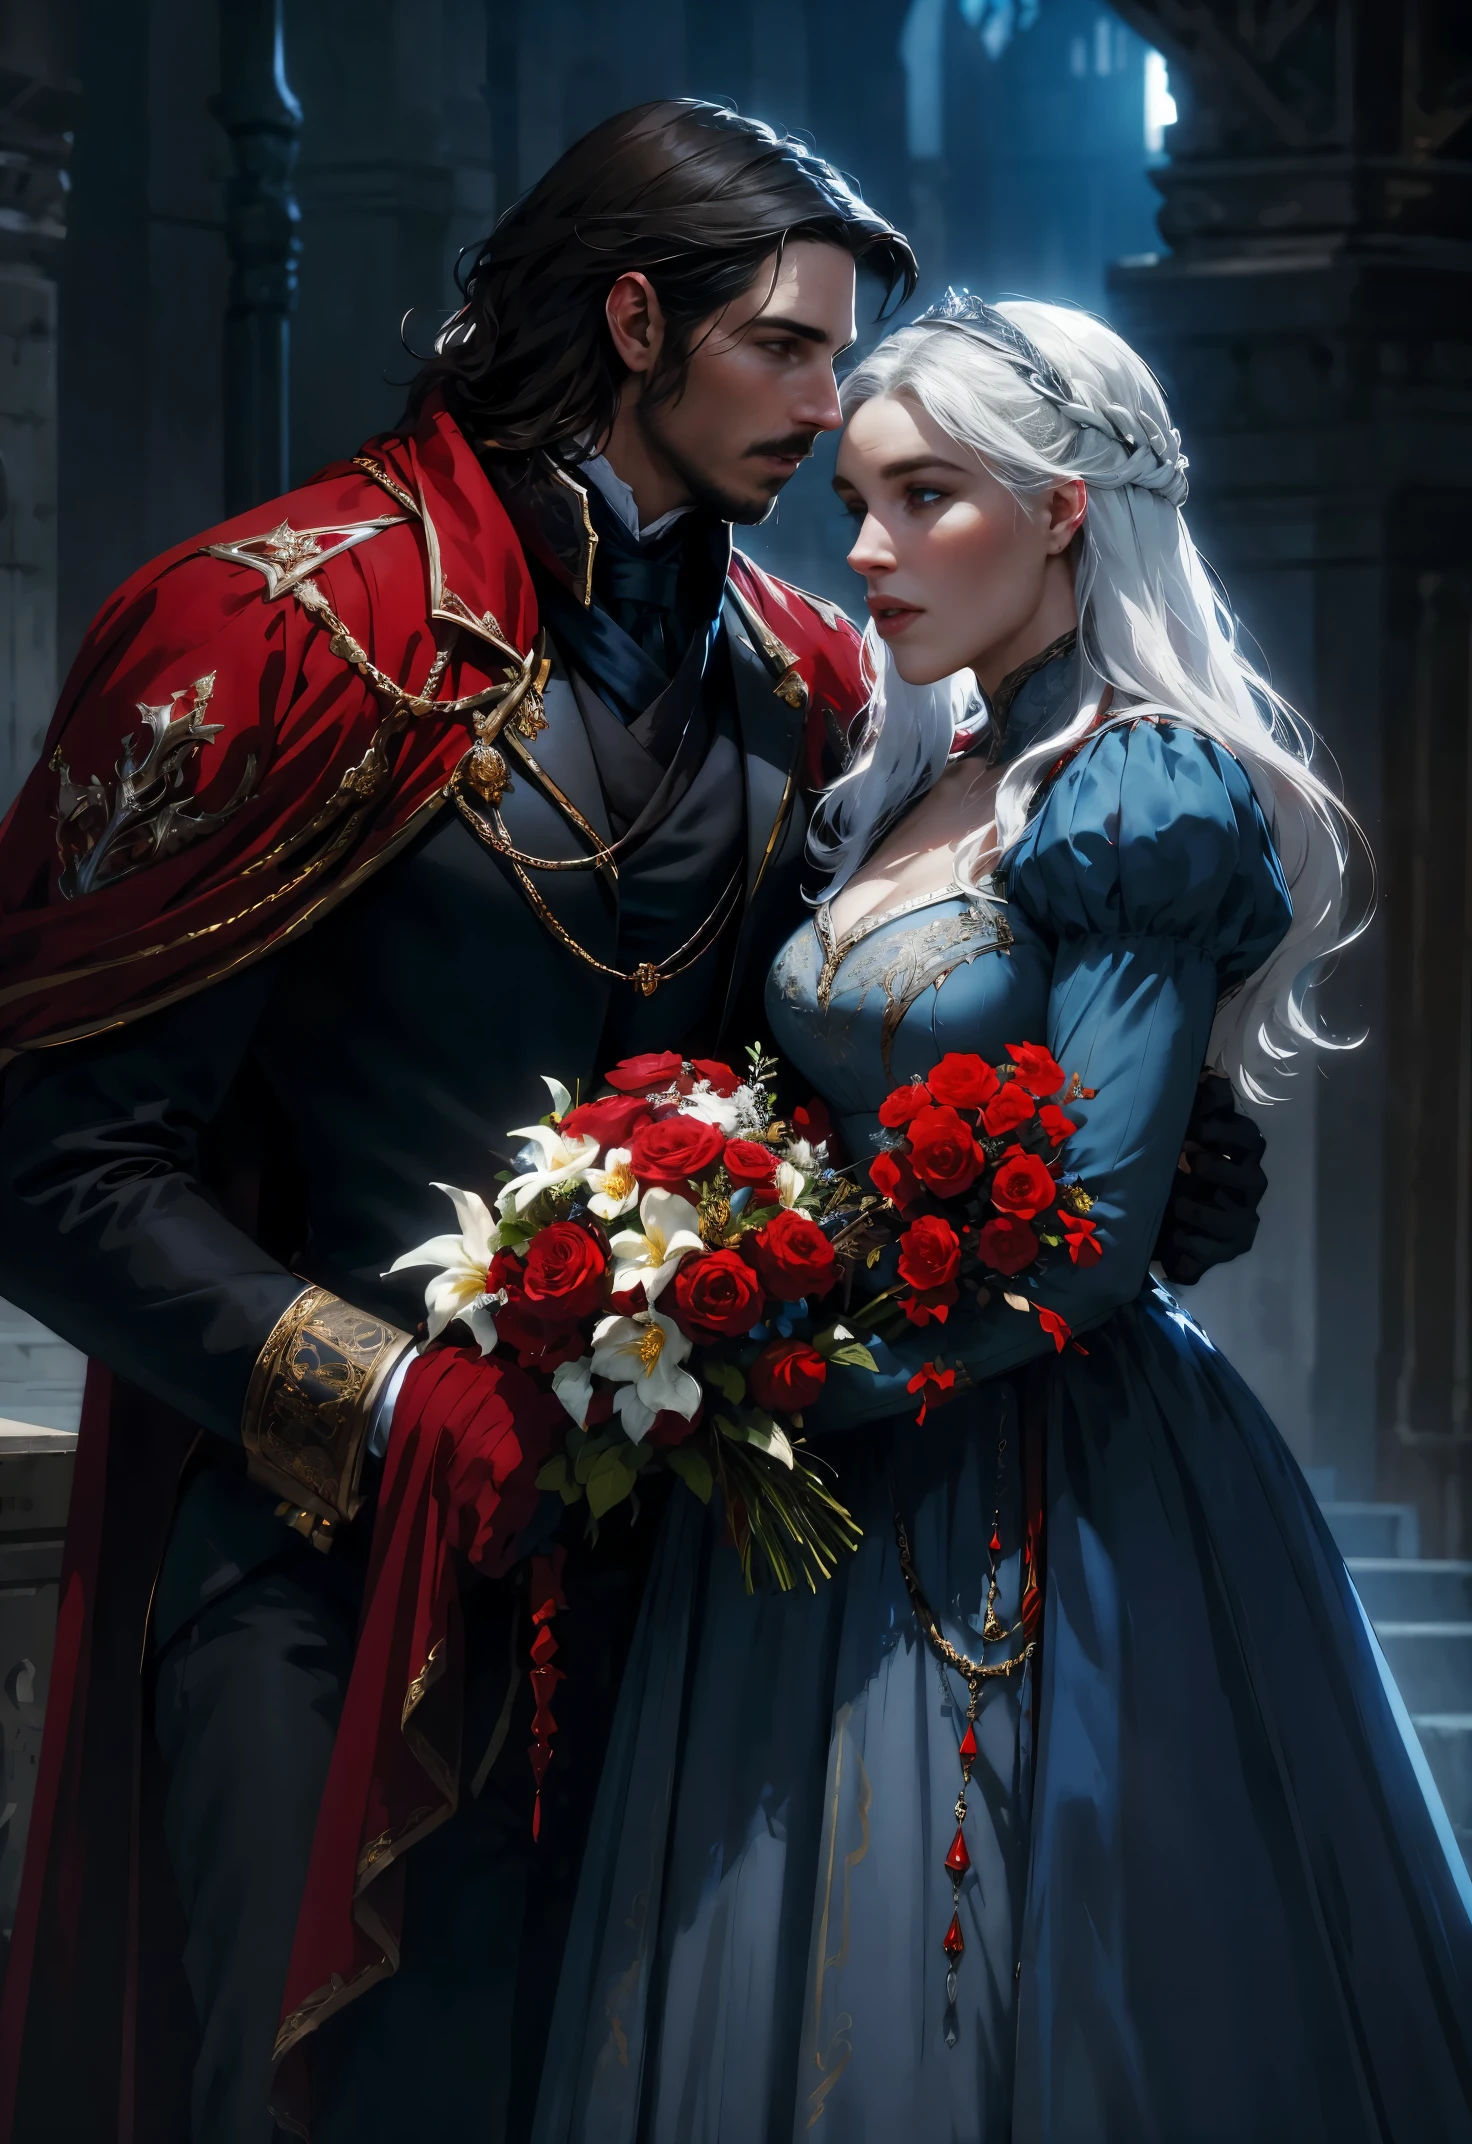 ファンタジー, 赤, 黒, 青と白の色調, フラワーズ, 男と女がキスをしている, クリスチャン・ベールに似た男性, 19世紀の王室の制服を着て, デナーリスに似た女性, 19世紀の王室の衣装を着て, 高解像度